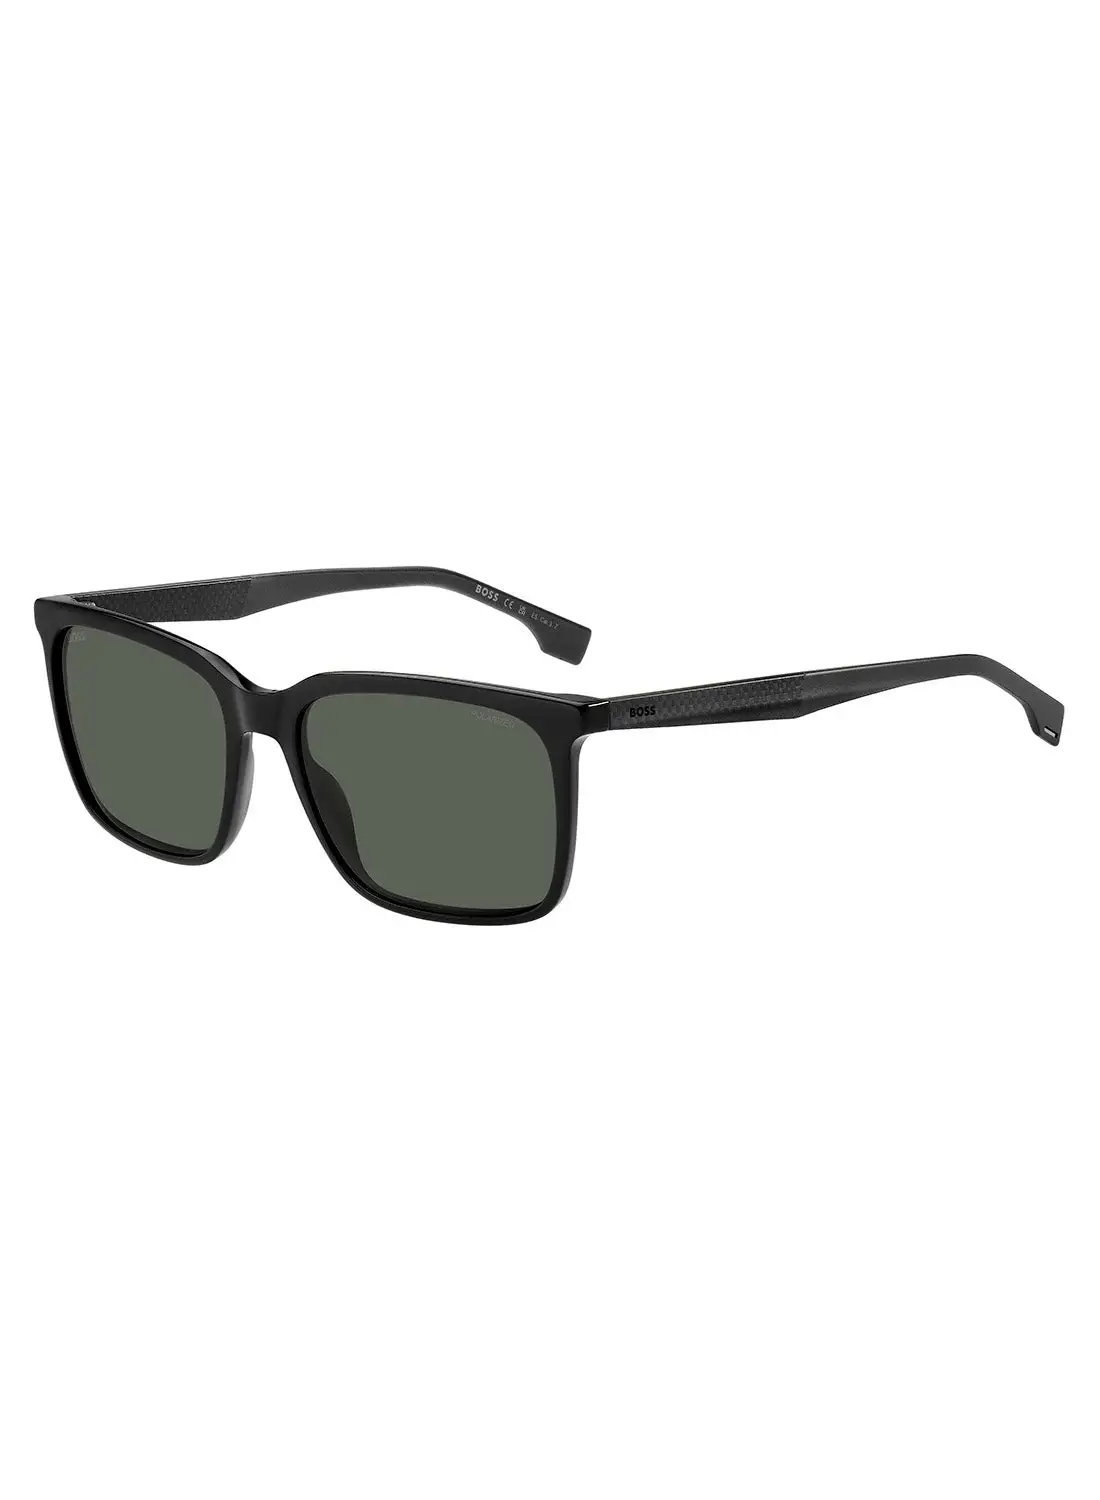 HUGO BOSS Men's Polarized Rectangular Sunglasses - Boss 1579/S Black Millimeter - Lens Size: 57 Mm